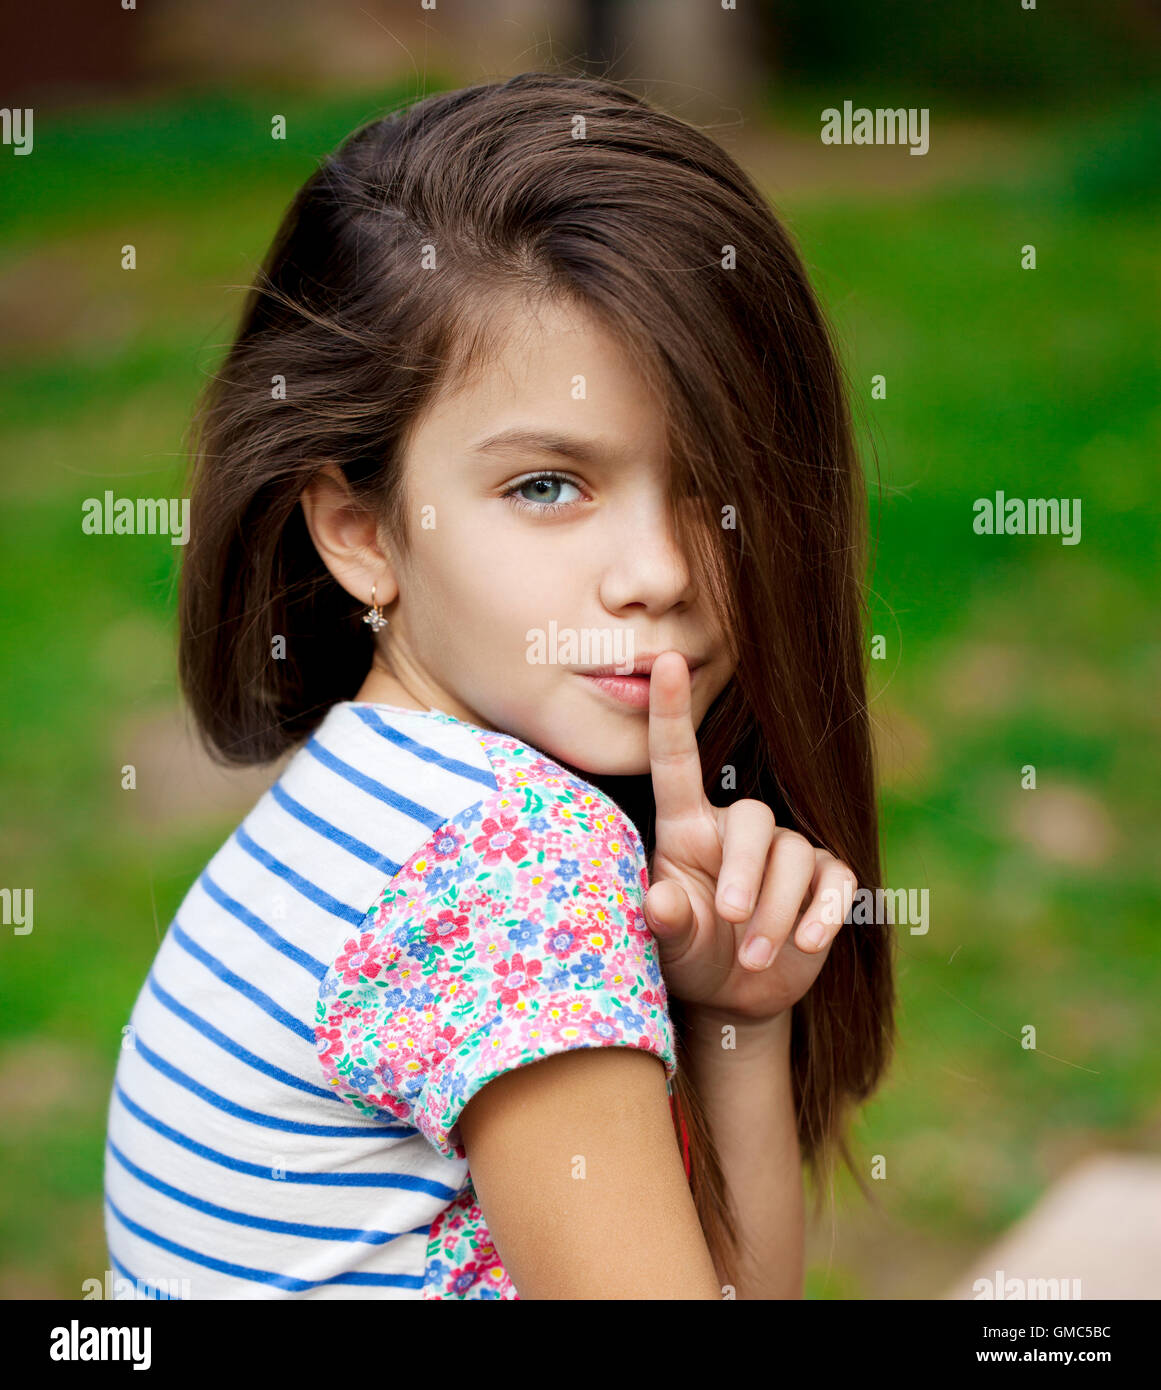 Junge schöne Mädchen hat für Lippen als Zeichen der Stille, im freien Sommer Zeigefinger gelegt. Stockfoto